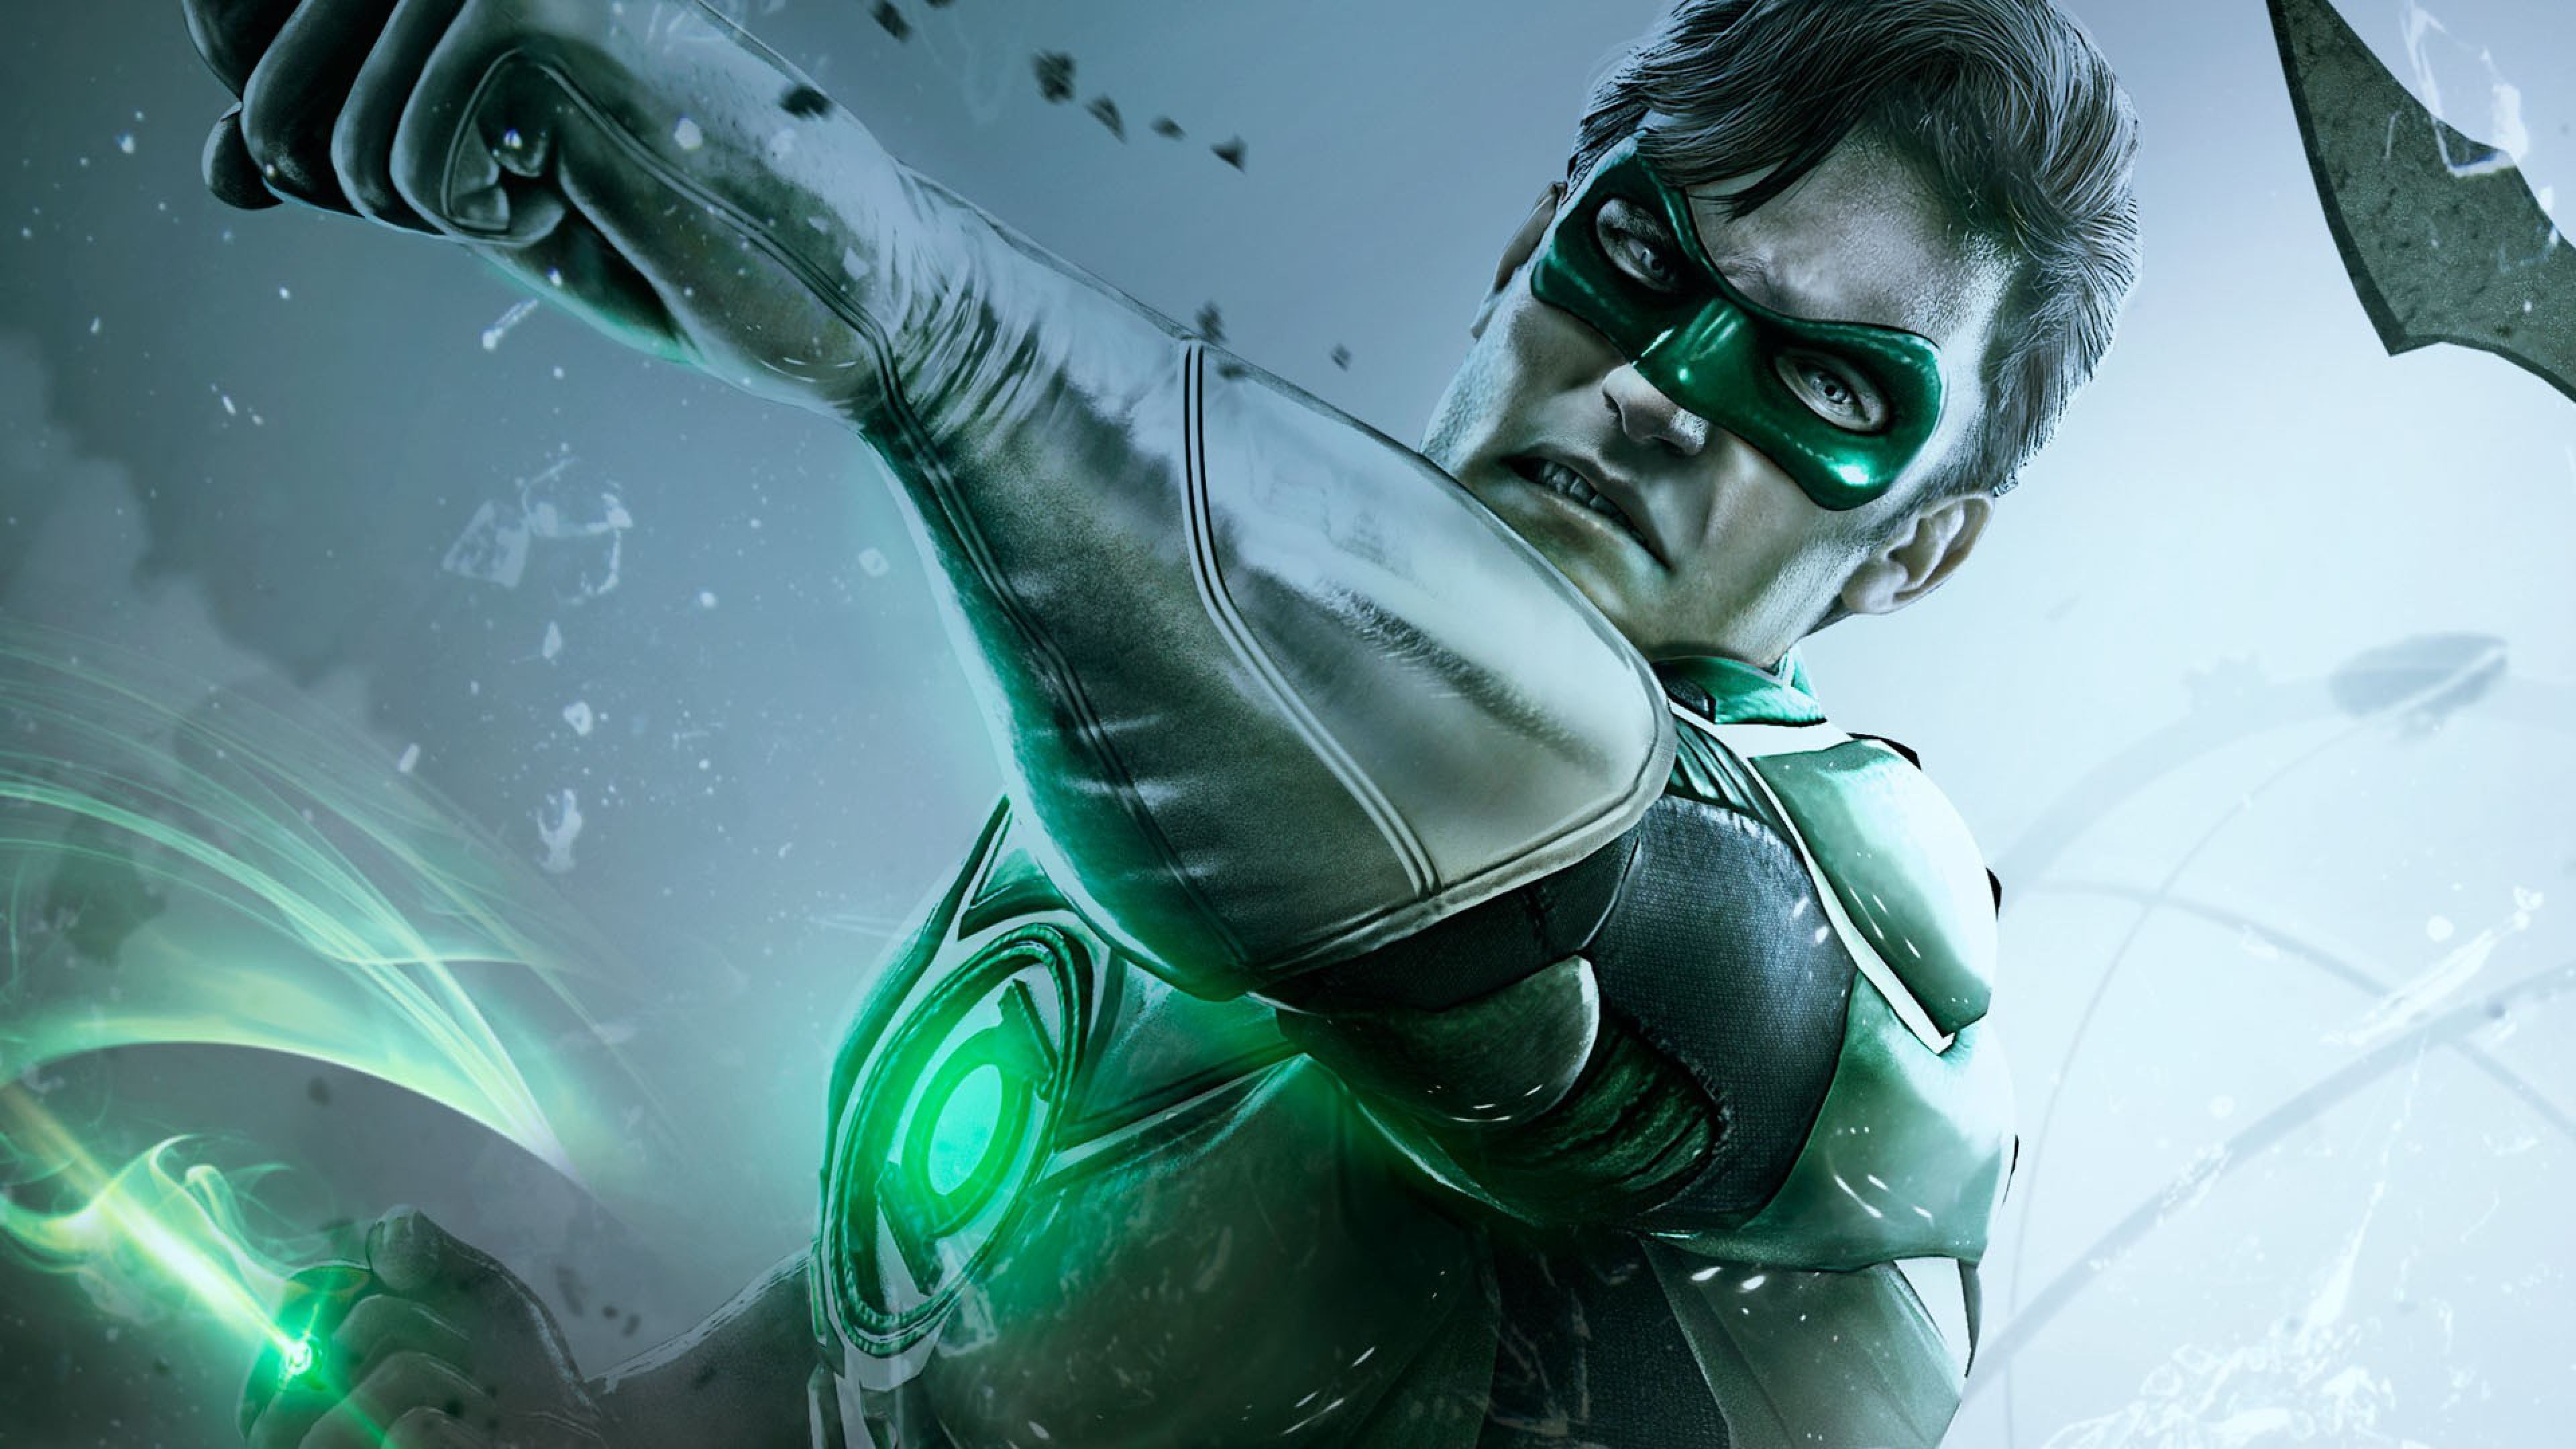 Injustice Game Green Lantern. Green lantern, Green lantern